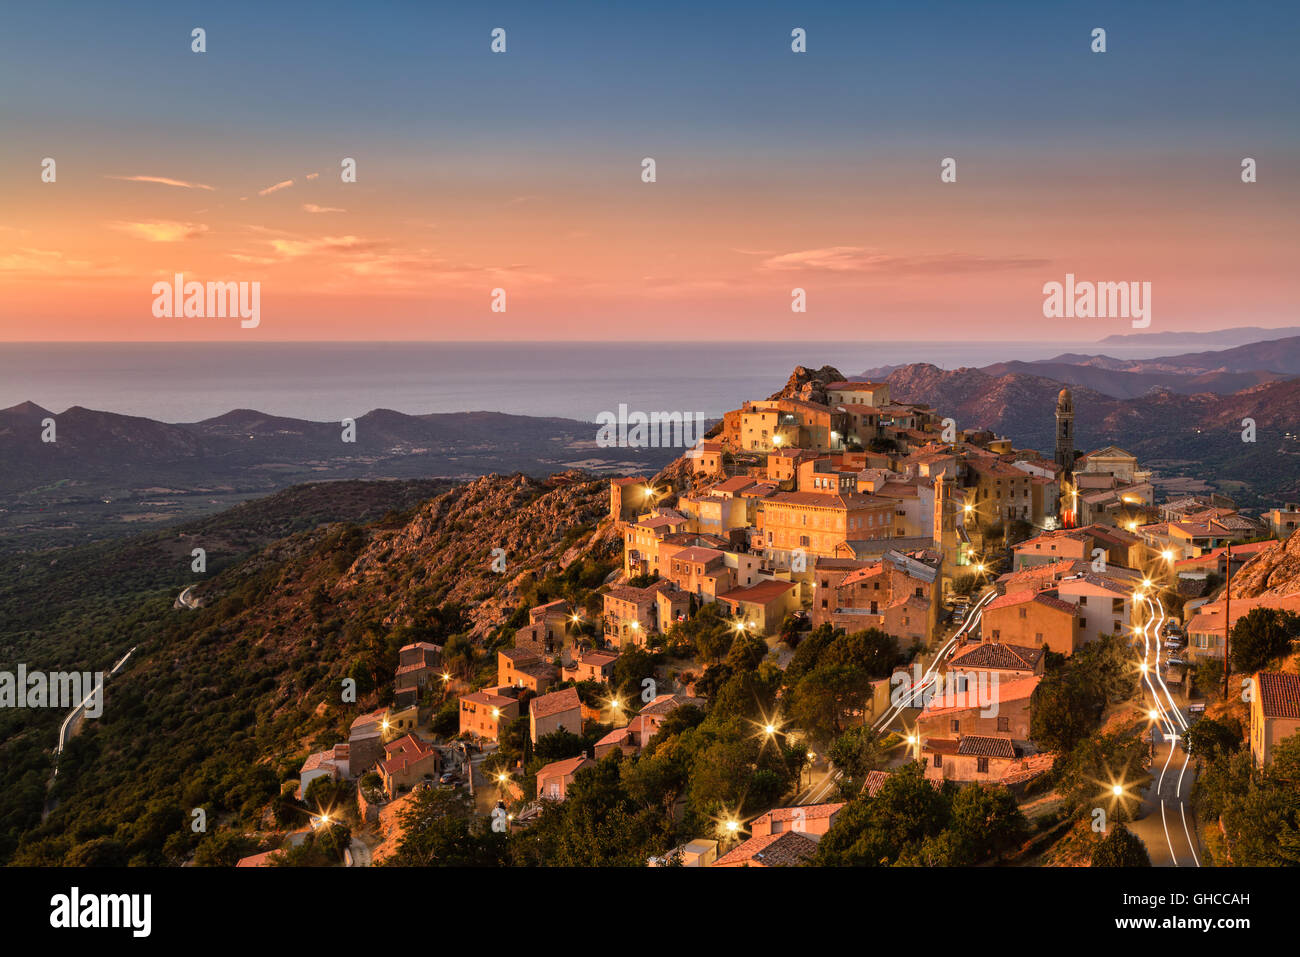 Die Balagne Dorf von Speloncato in Korsika gebadet in den späten Abend Sonnenschein mit Straßenlaternen und Auto Lichtspuren Stockfoto